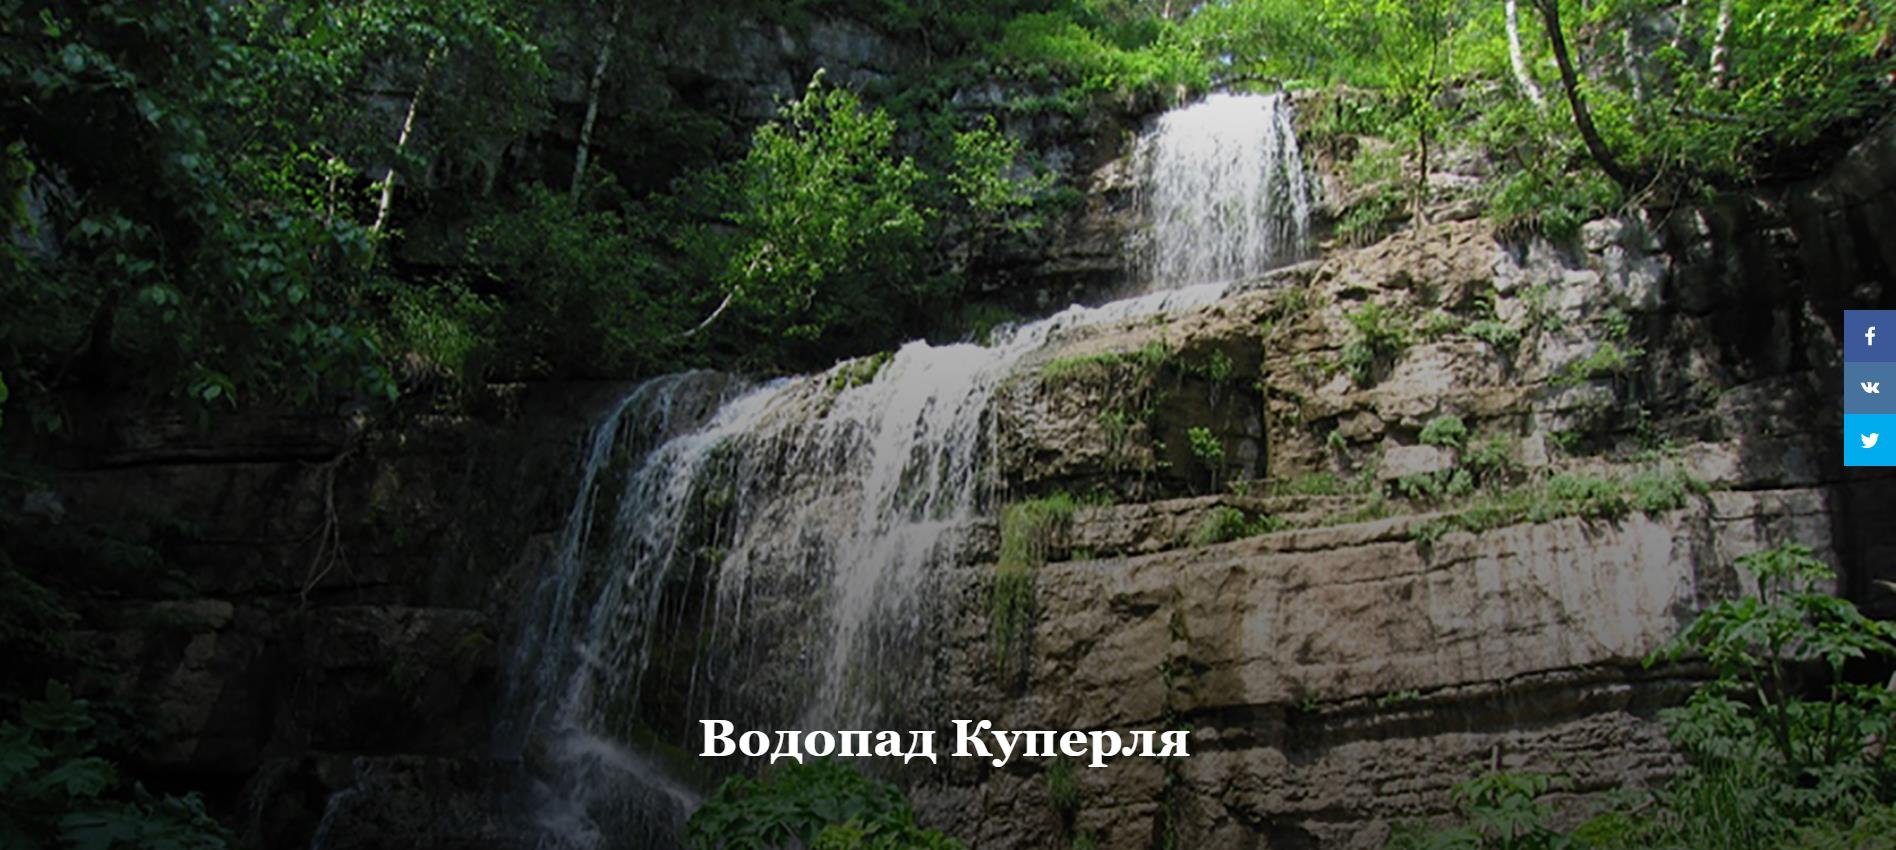 Водопад Куперля на карте Башкирии